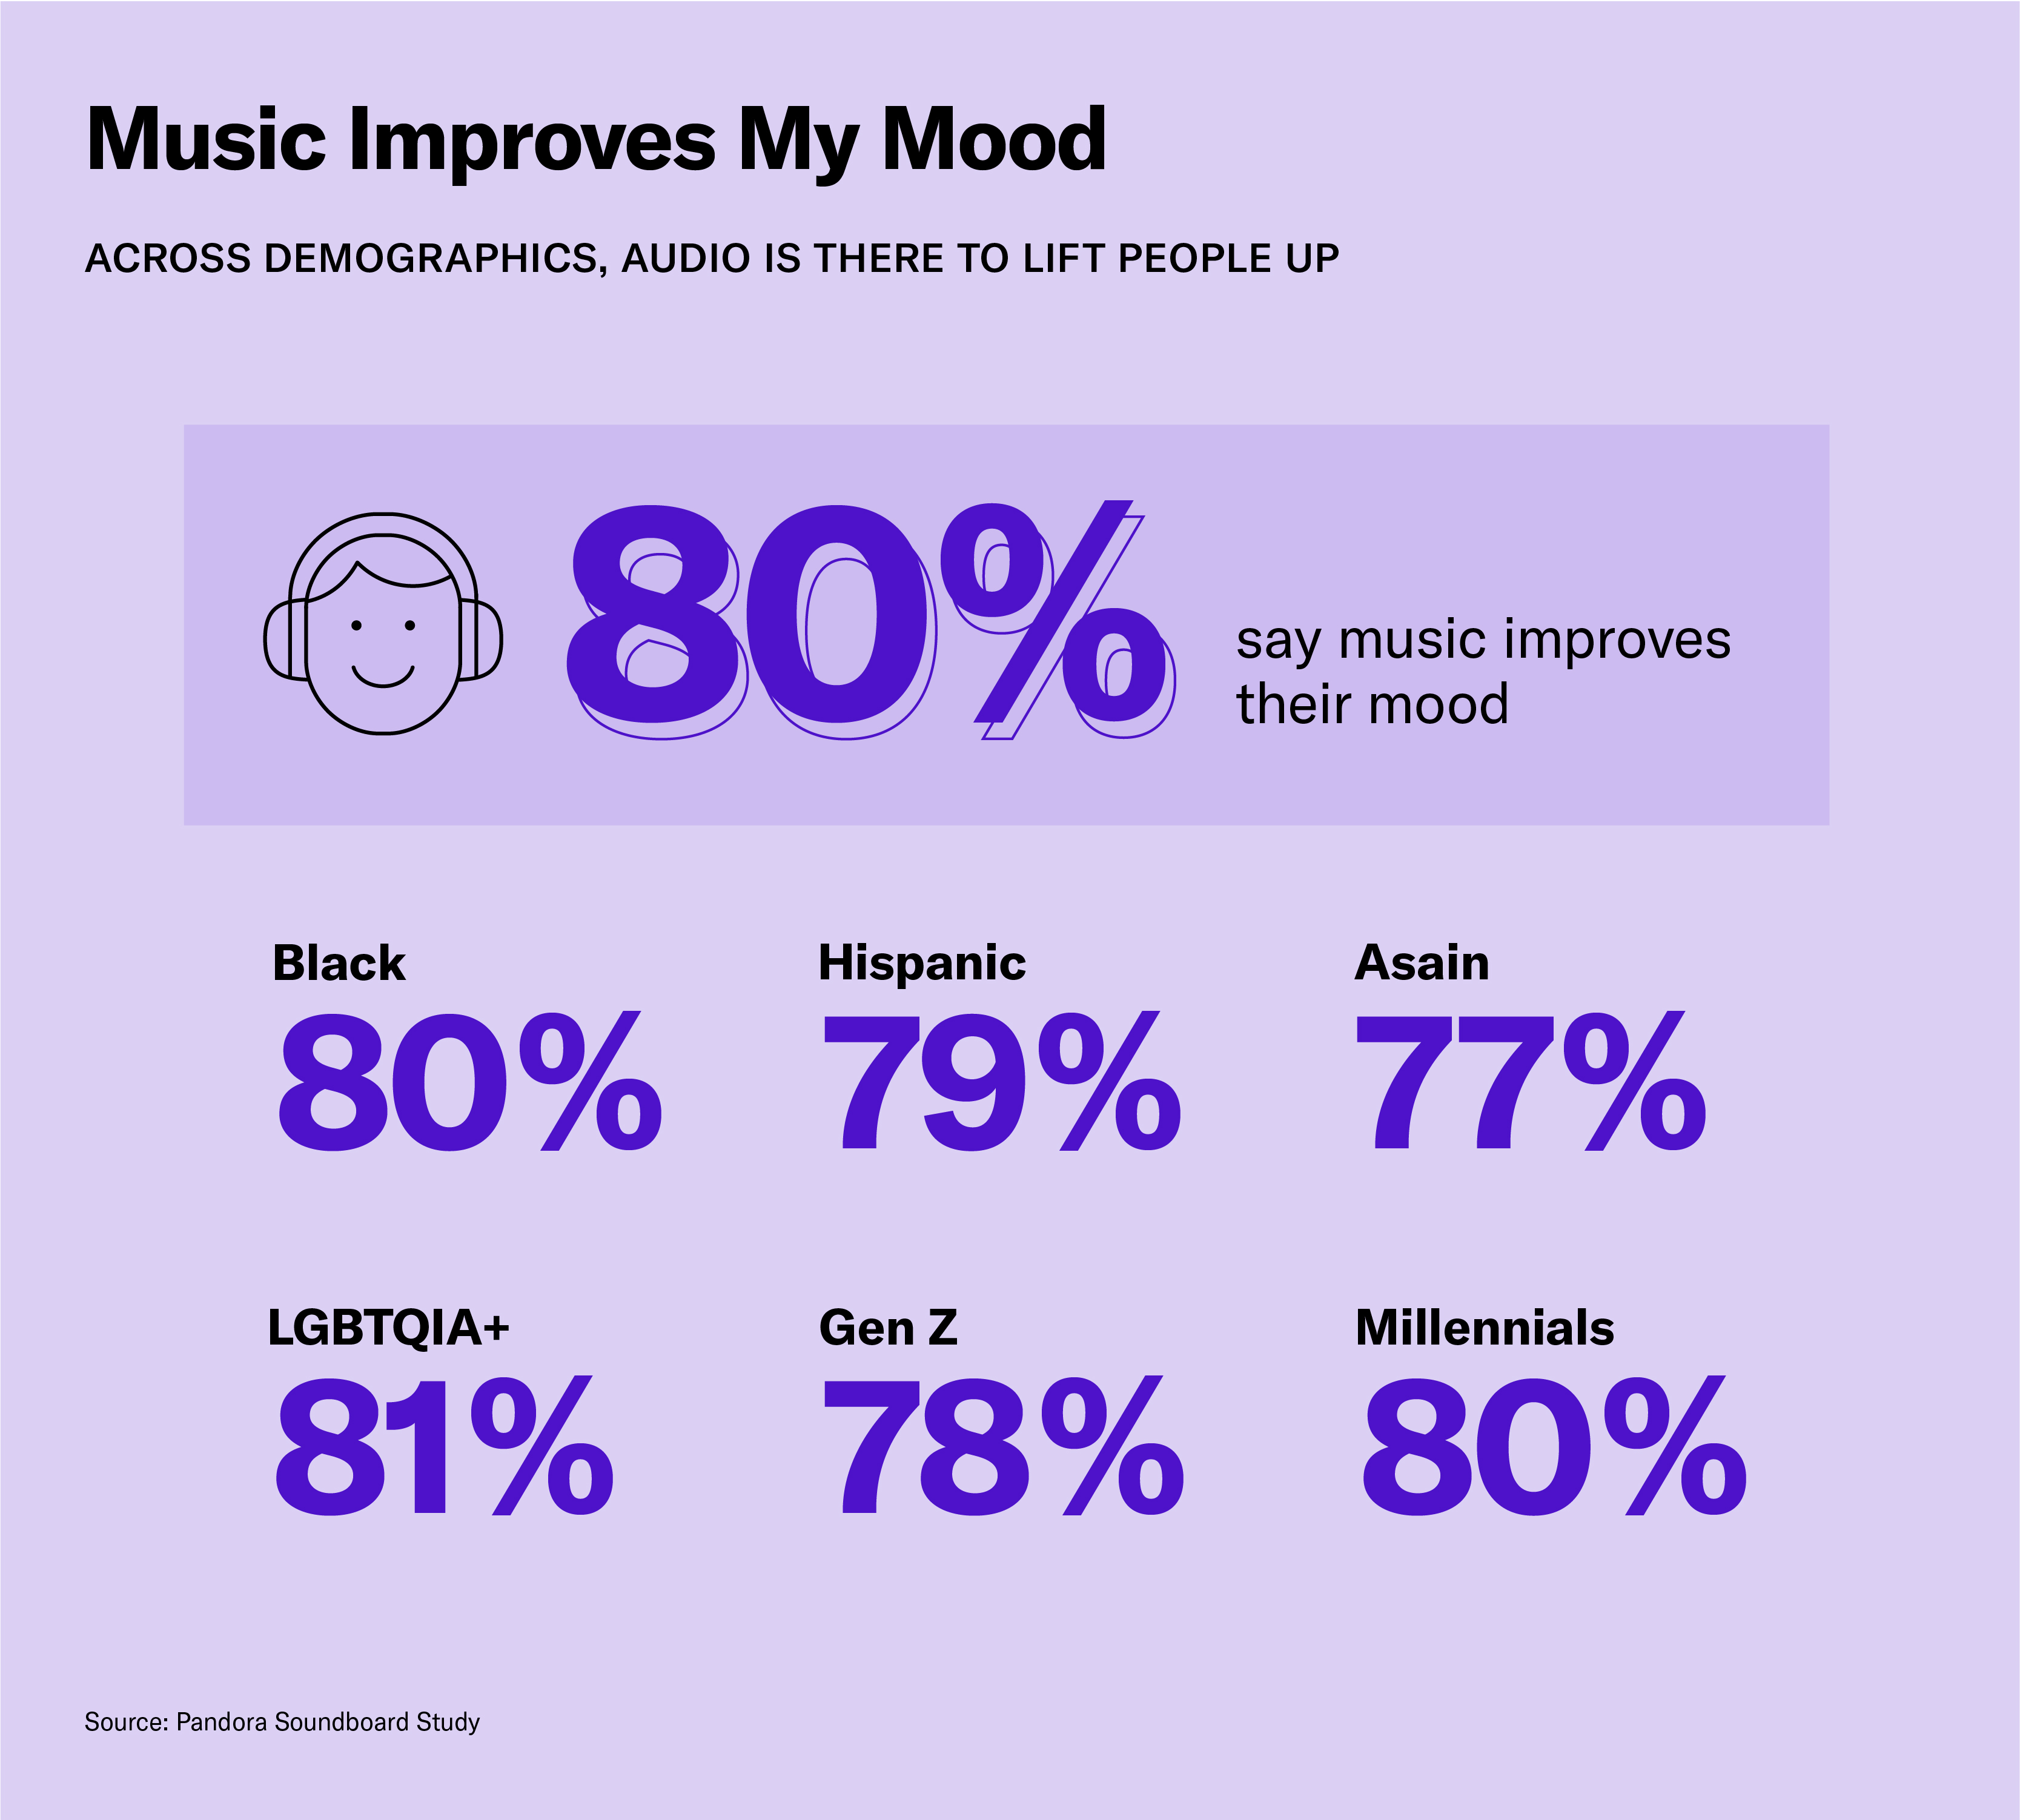 Digital Audio Improves Audience Moods